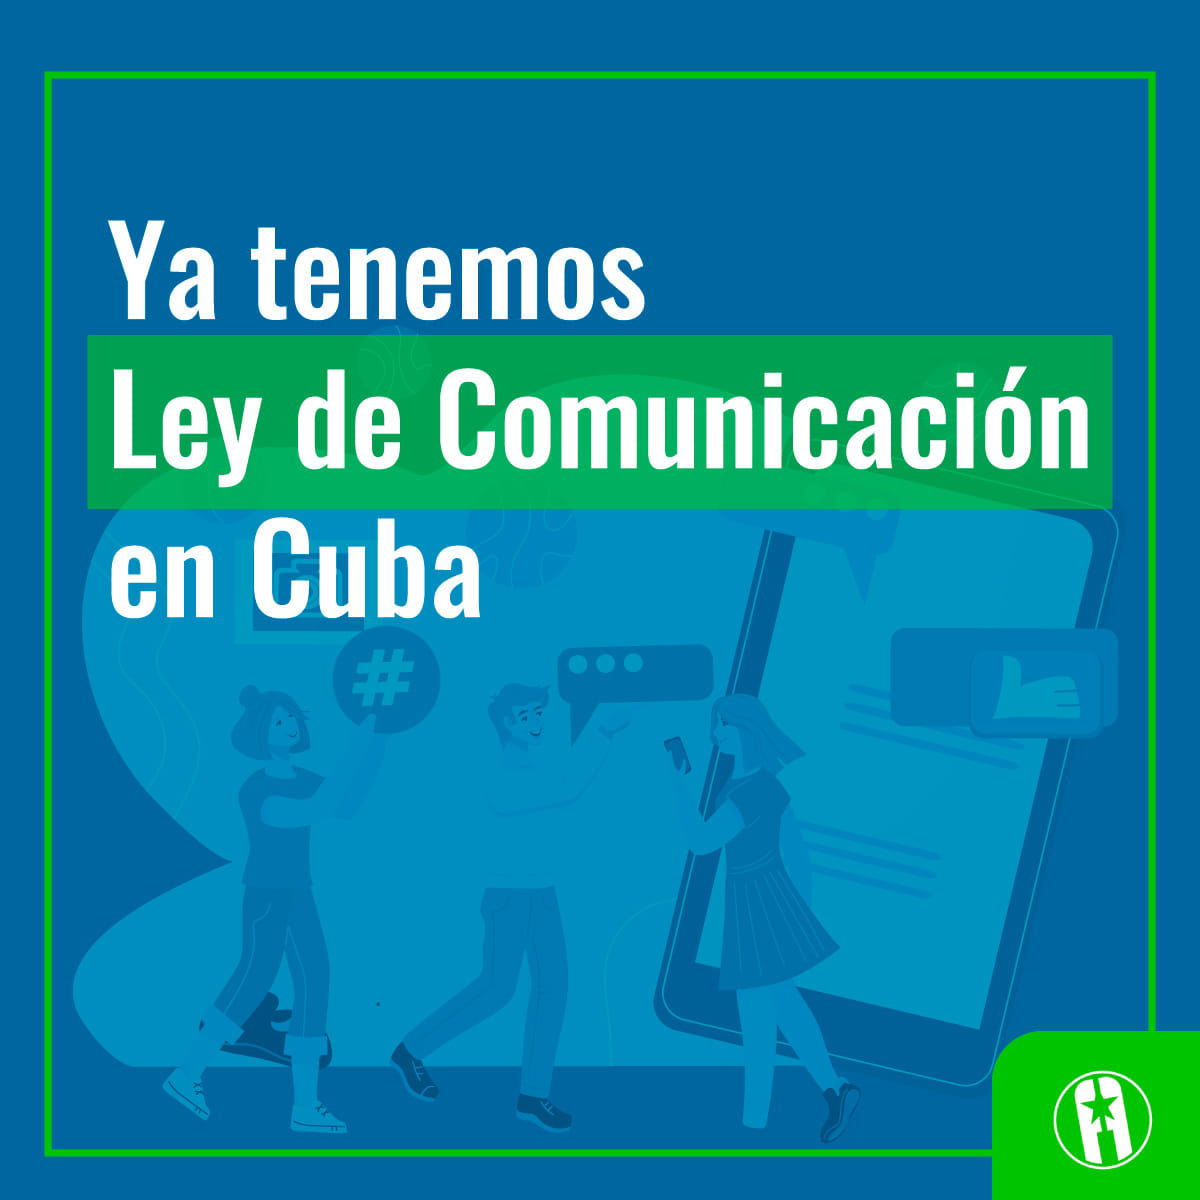 Ley de Comunicación Social en Cuba